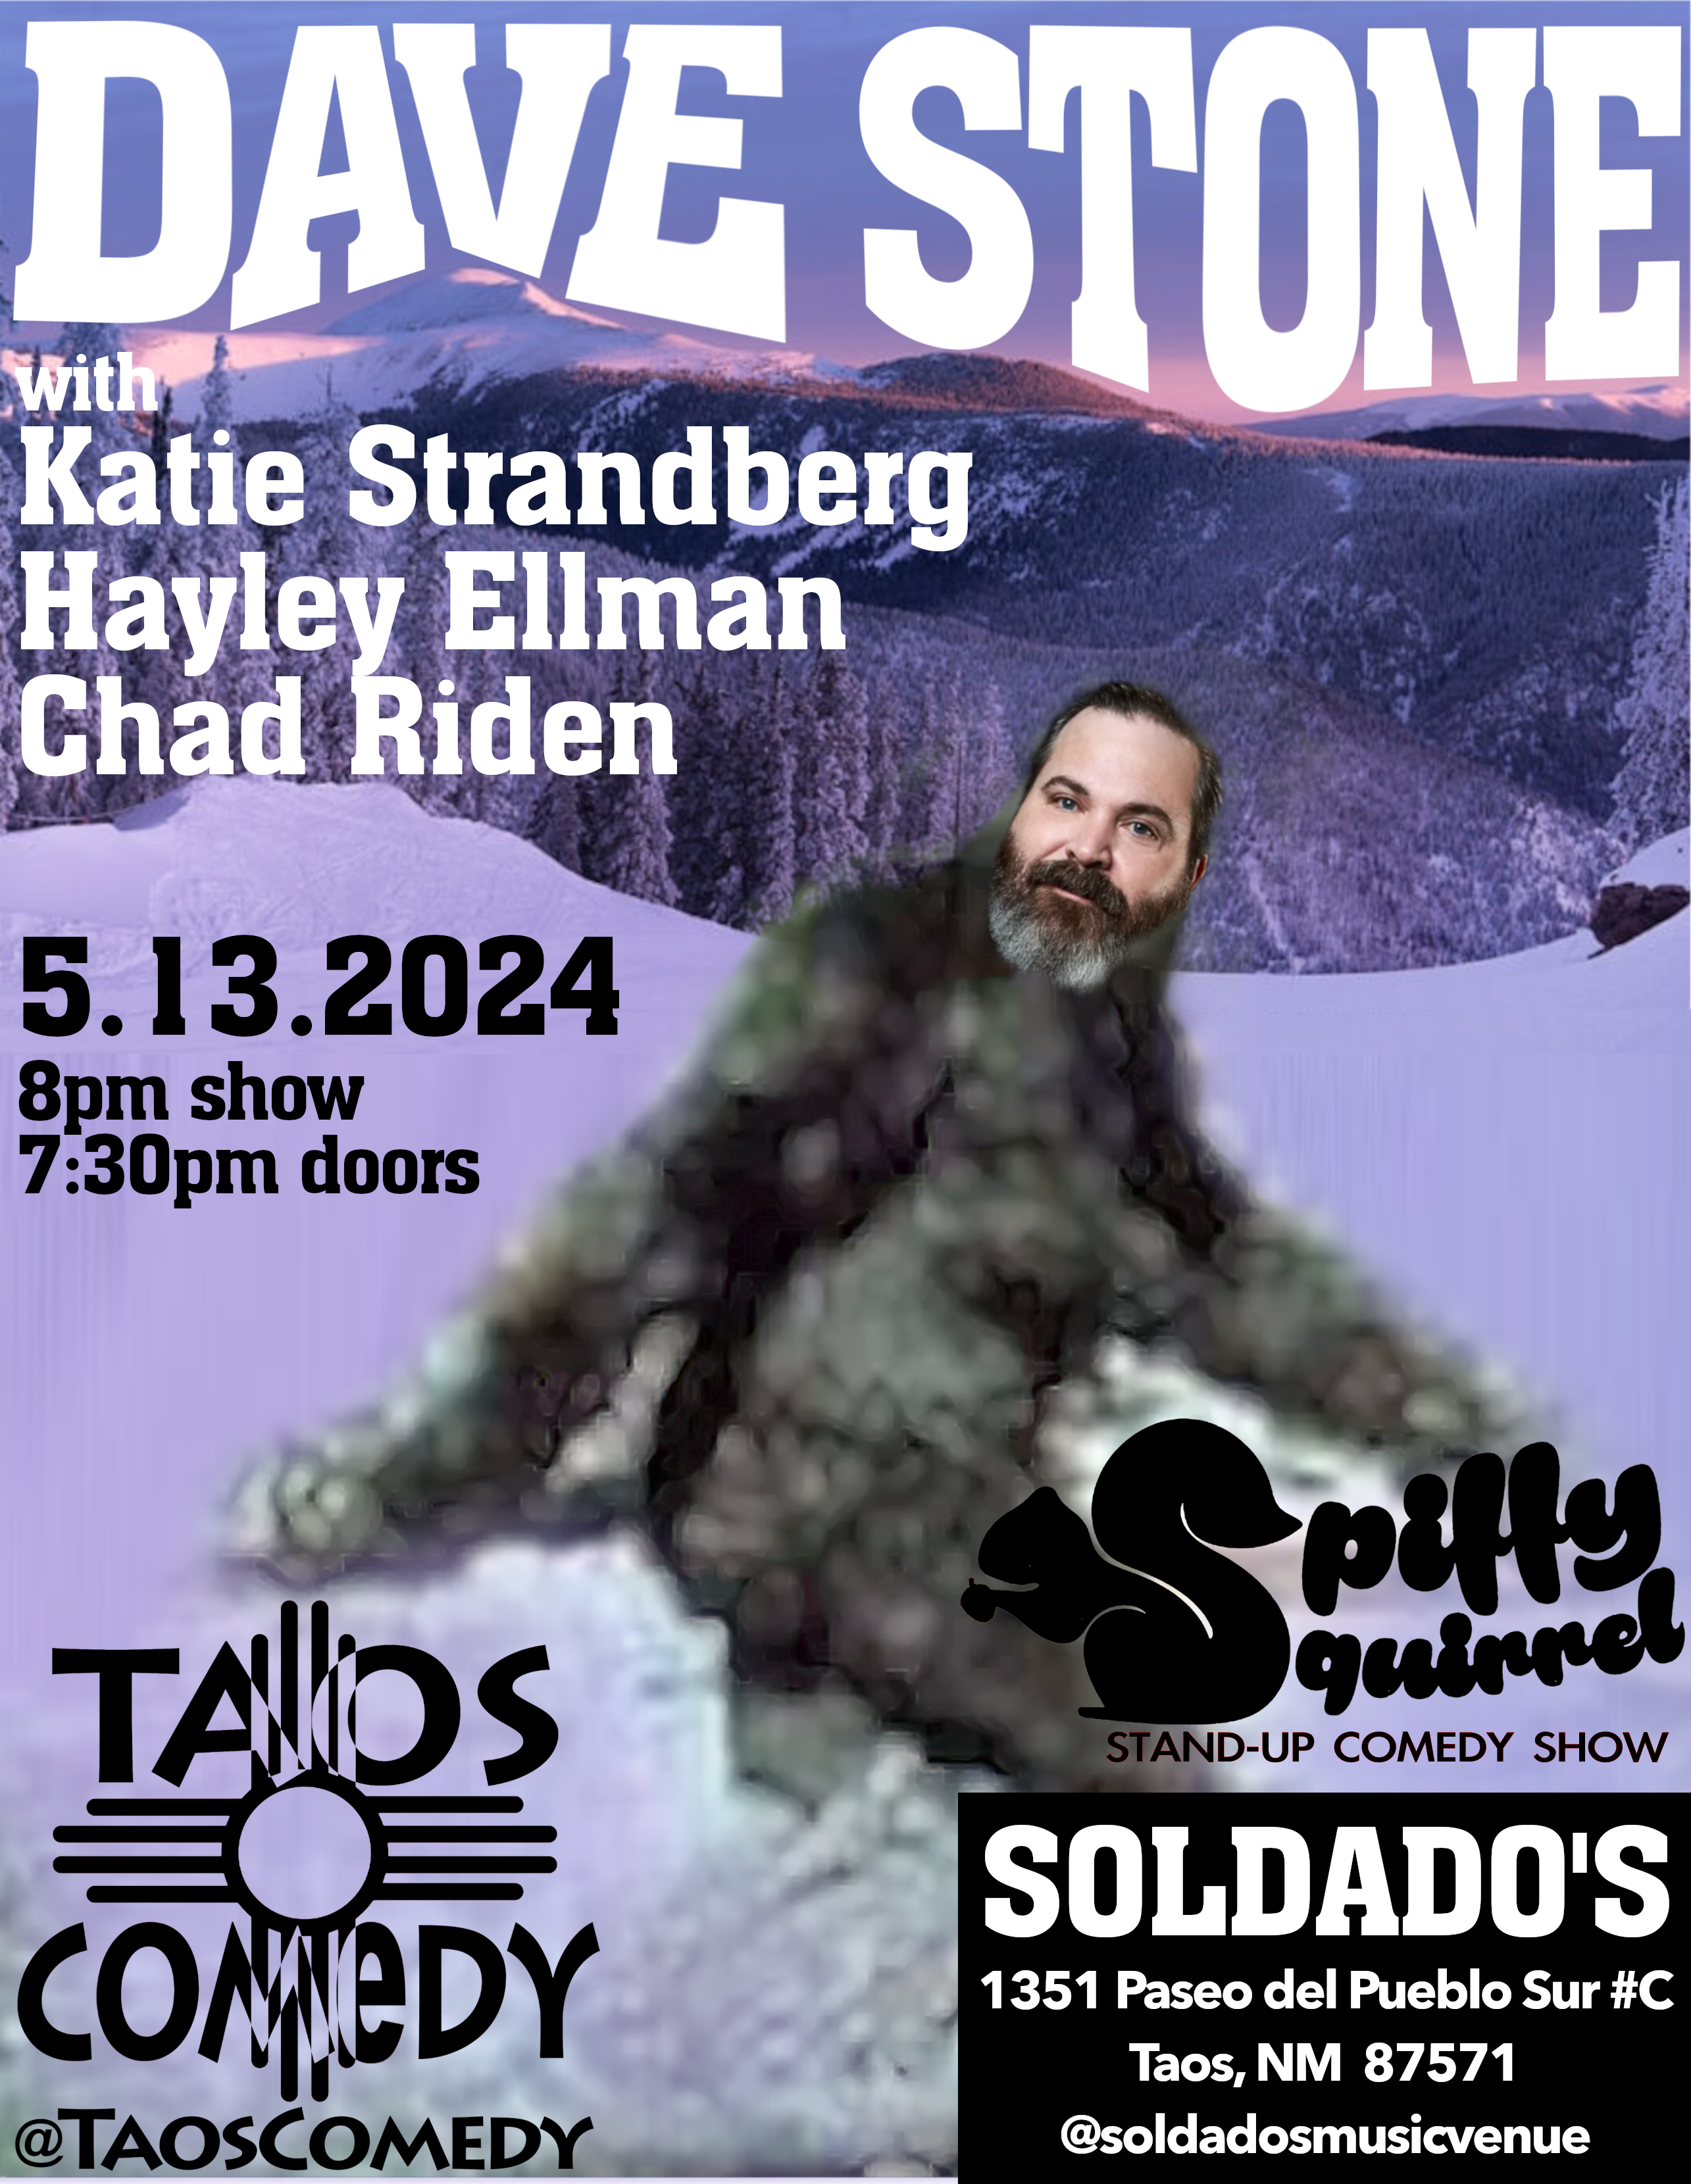 Dave Stone with Hayley Ellman, Katie Strandberg, Chad Riden at Soldado's Taos.